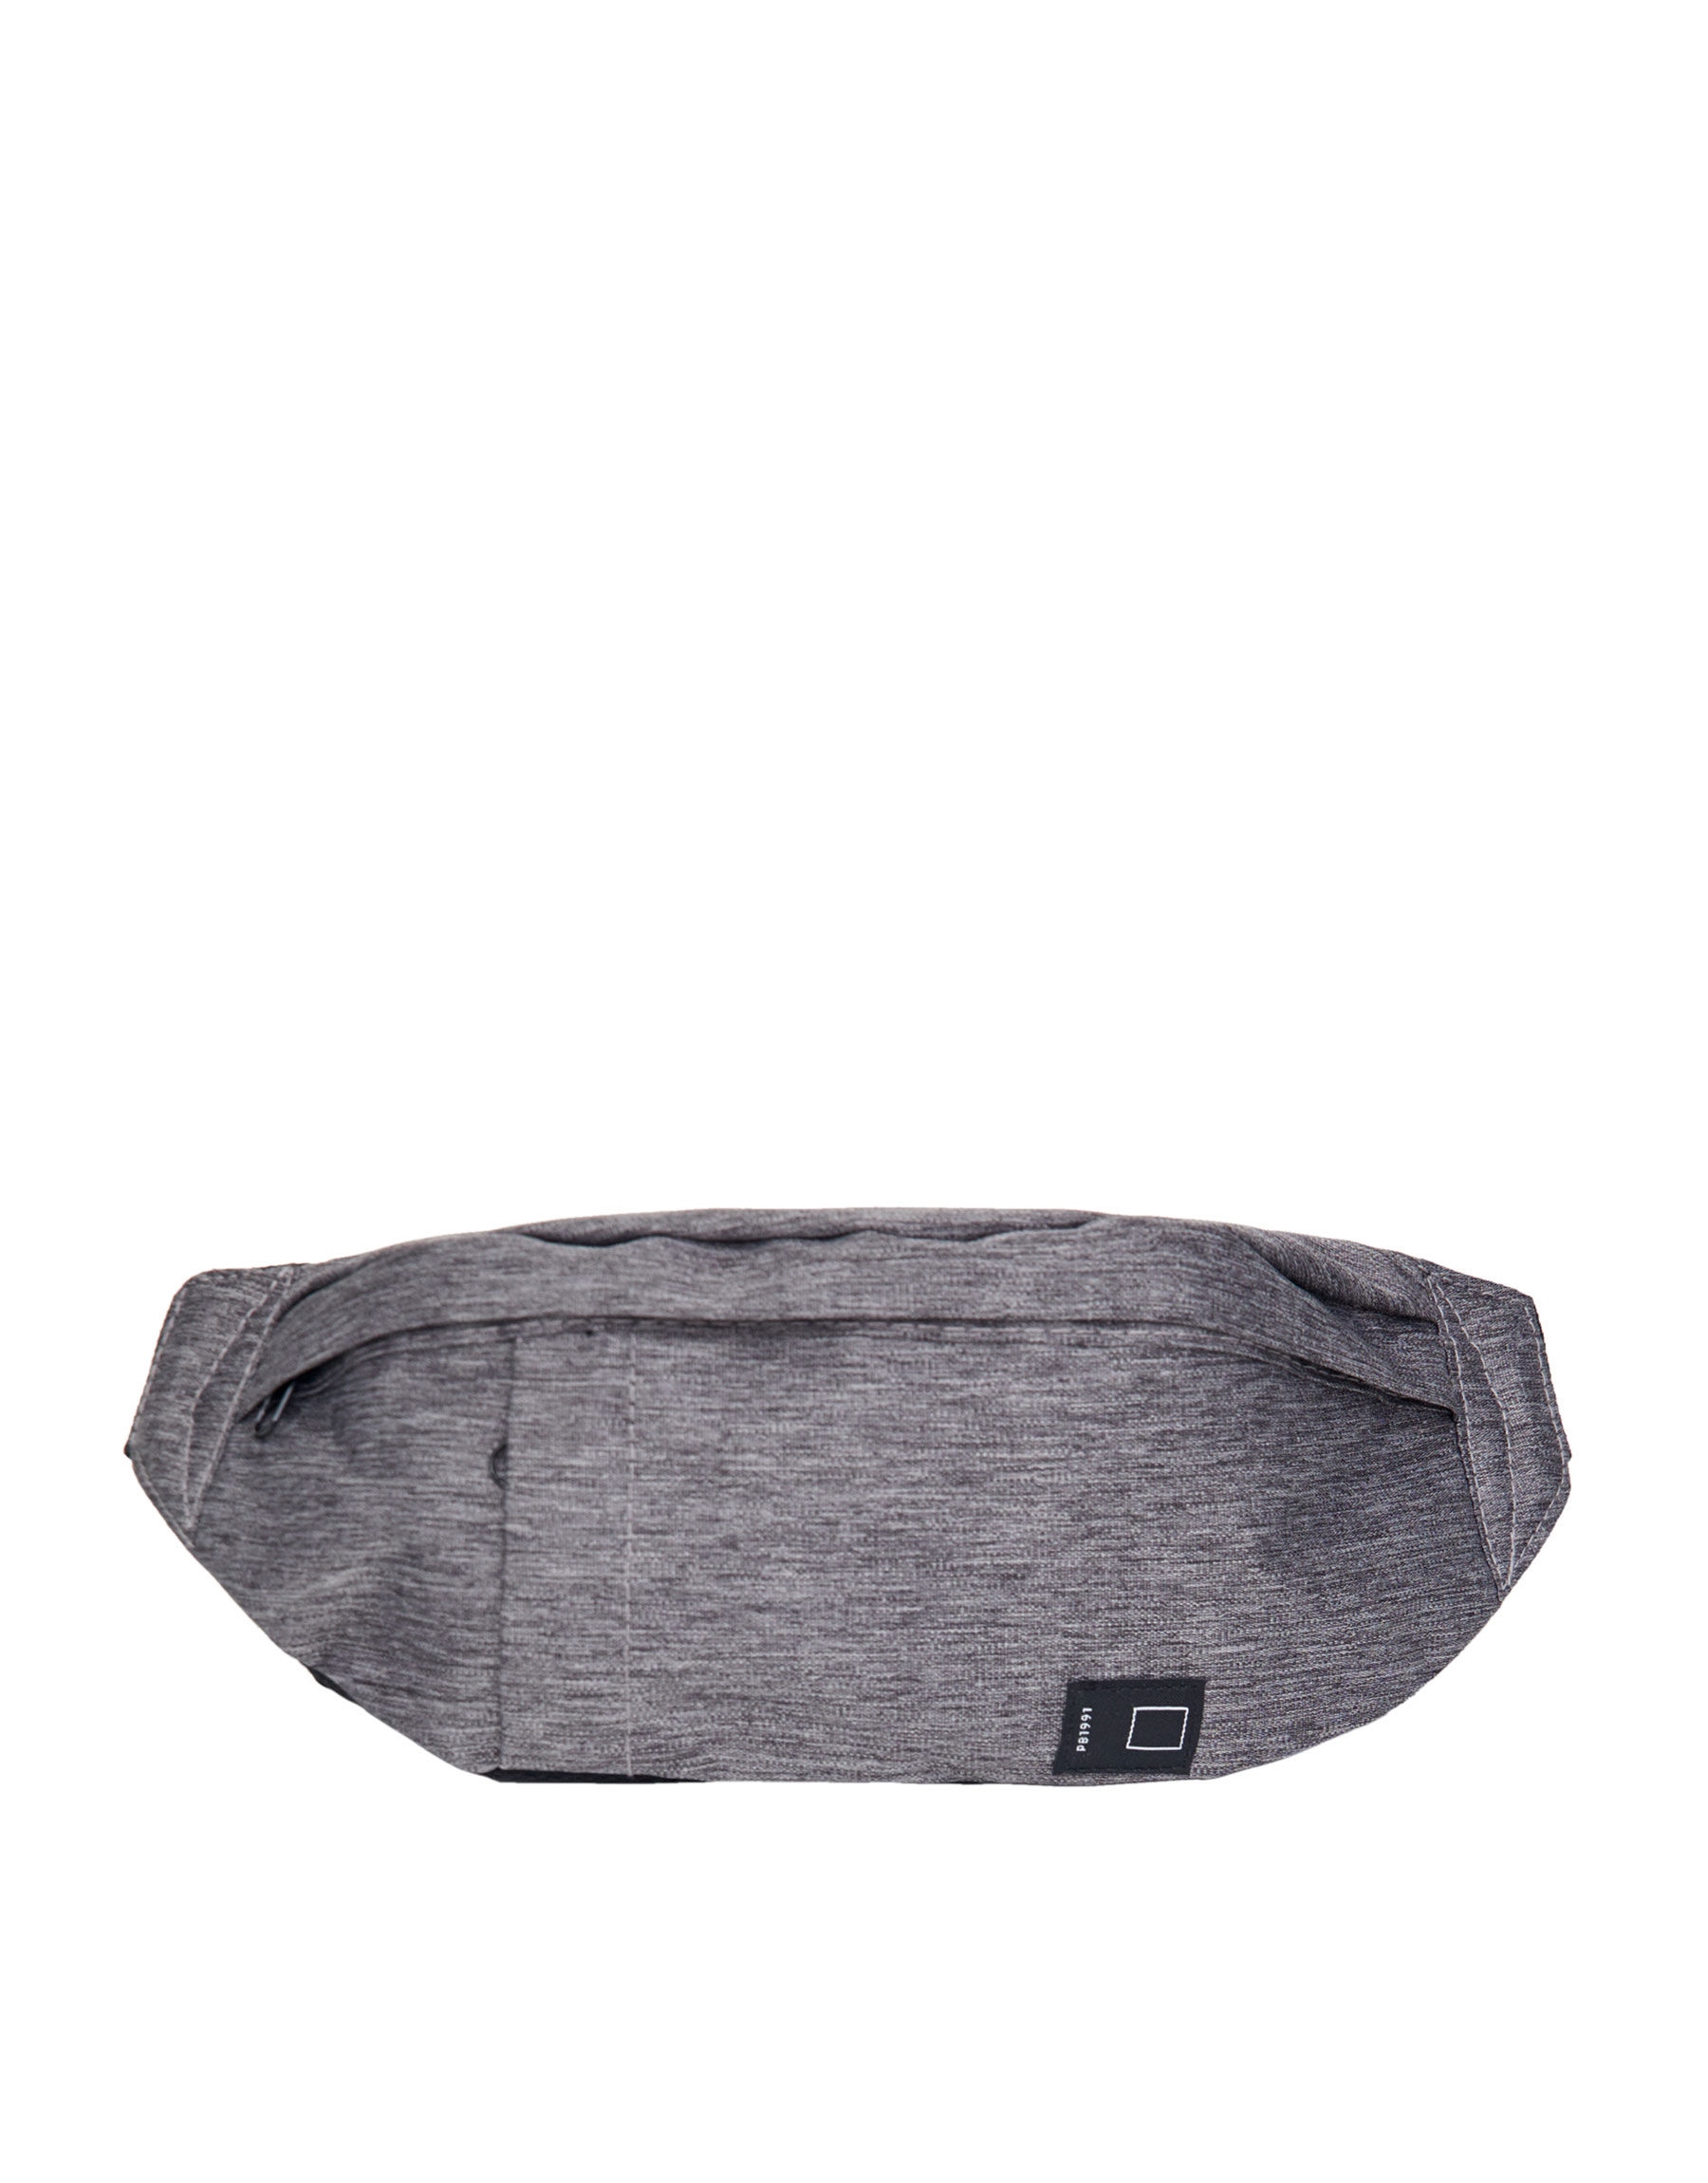 Поясная сумка цвета серый меланж РАЗНЫЕ Pull & Bear